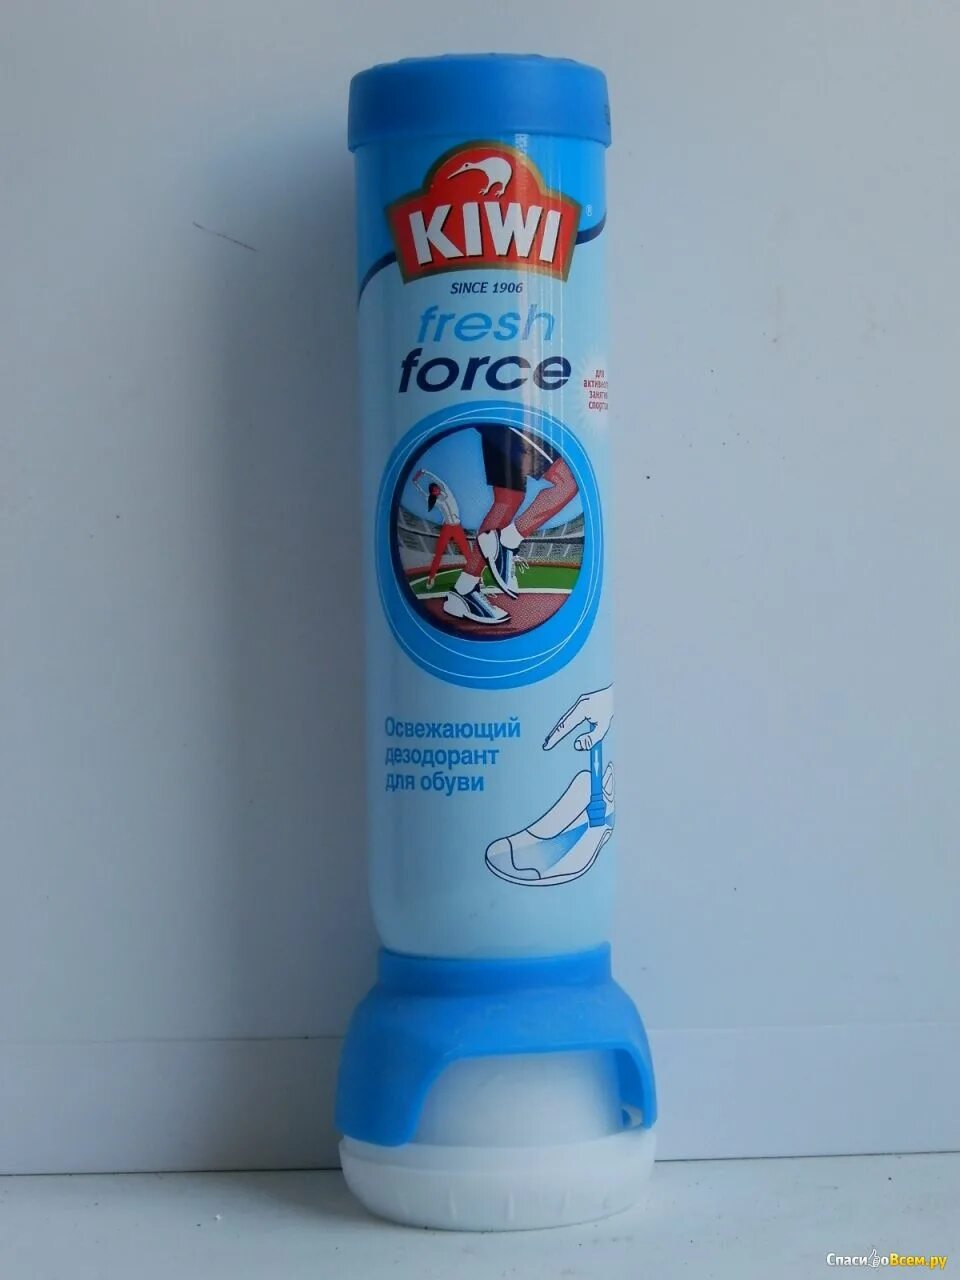 Дезодорант для обуви Kiwi deo Fresh. Kiwi дезодорант для обуви освежающий Fresh Force 100мл. Дезодорант для обуви Kiwi Fresh Force, 100 мл. QIWI дезодорант для обуви.